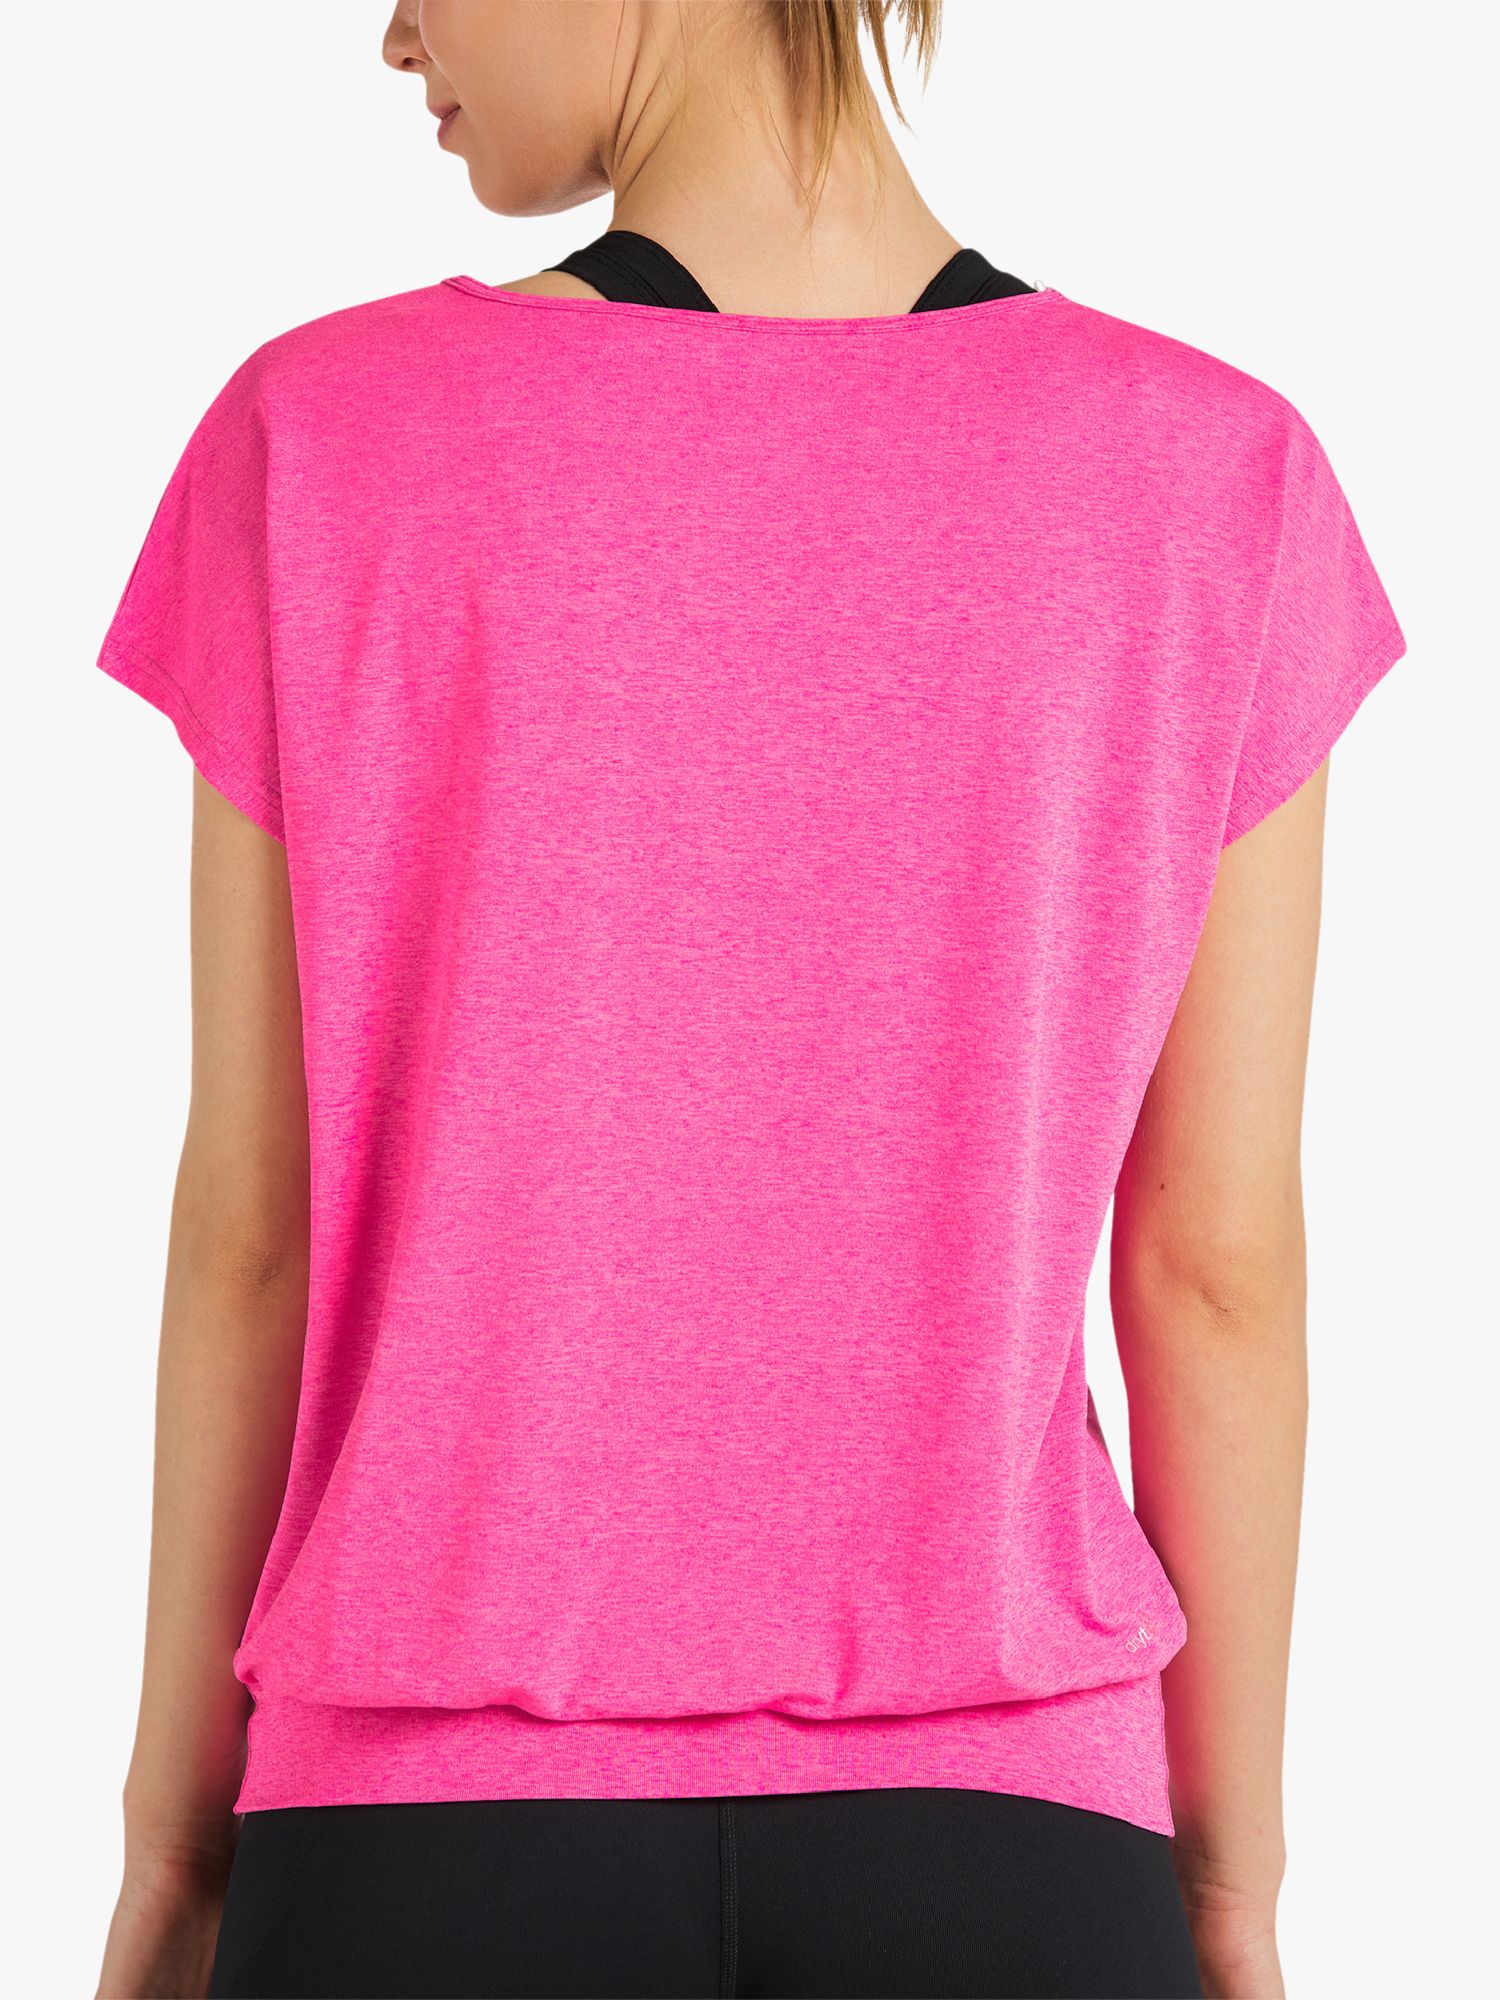 Venice Beach Ria Short Sleeve Gym Top, Fluorescent Pink, S